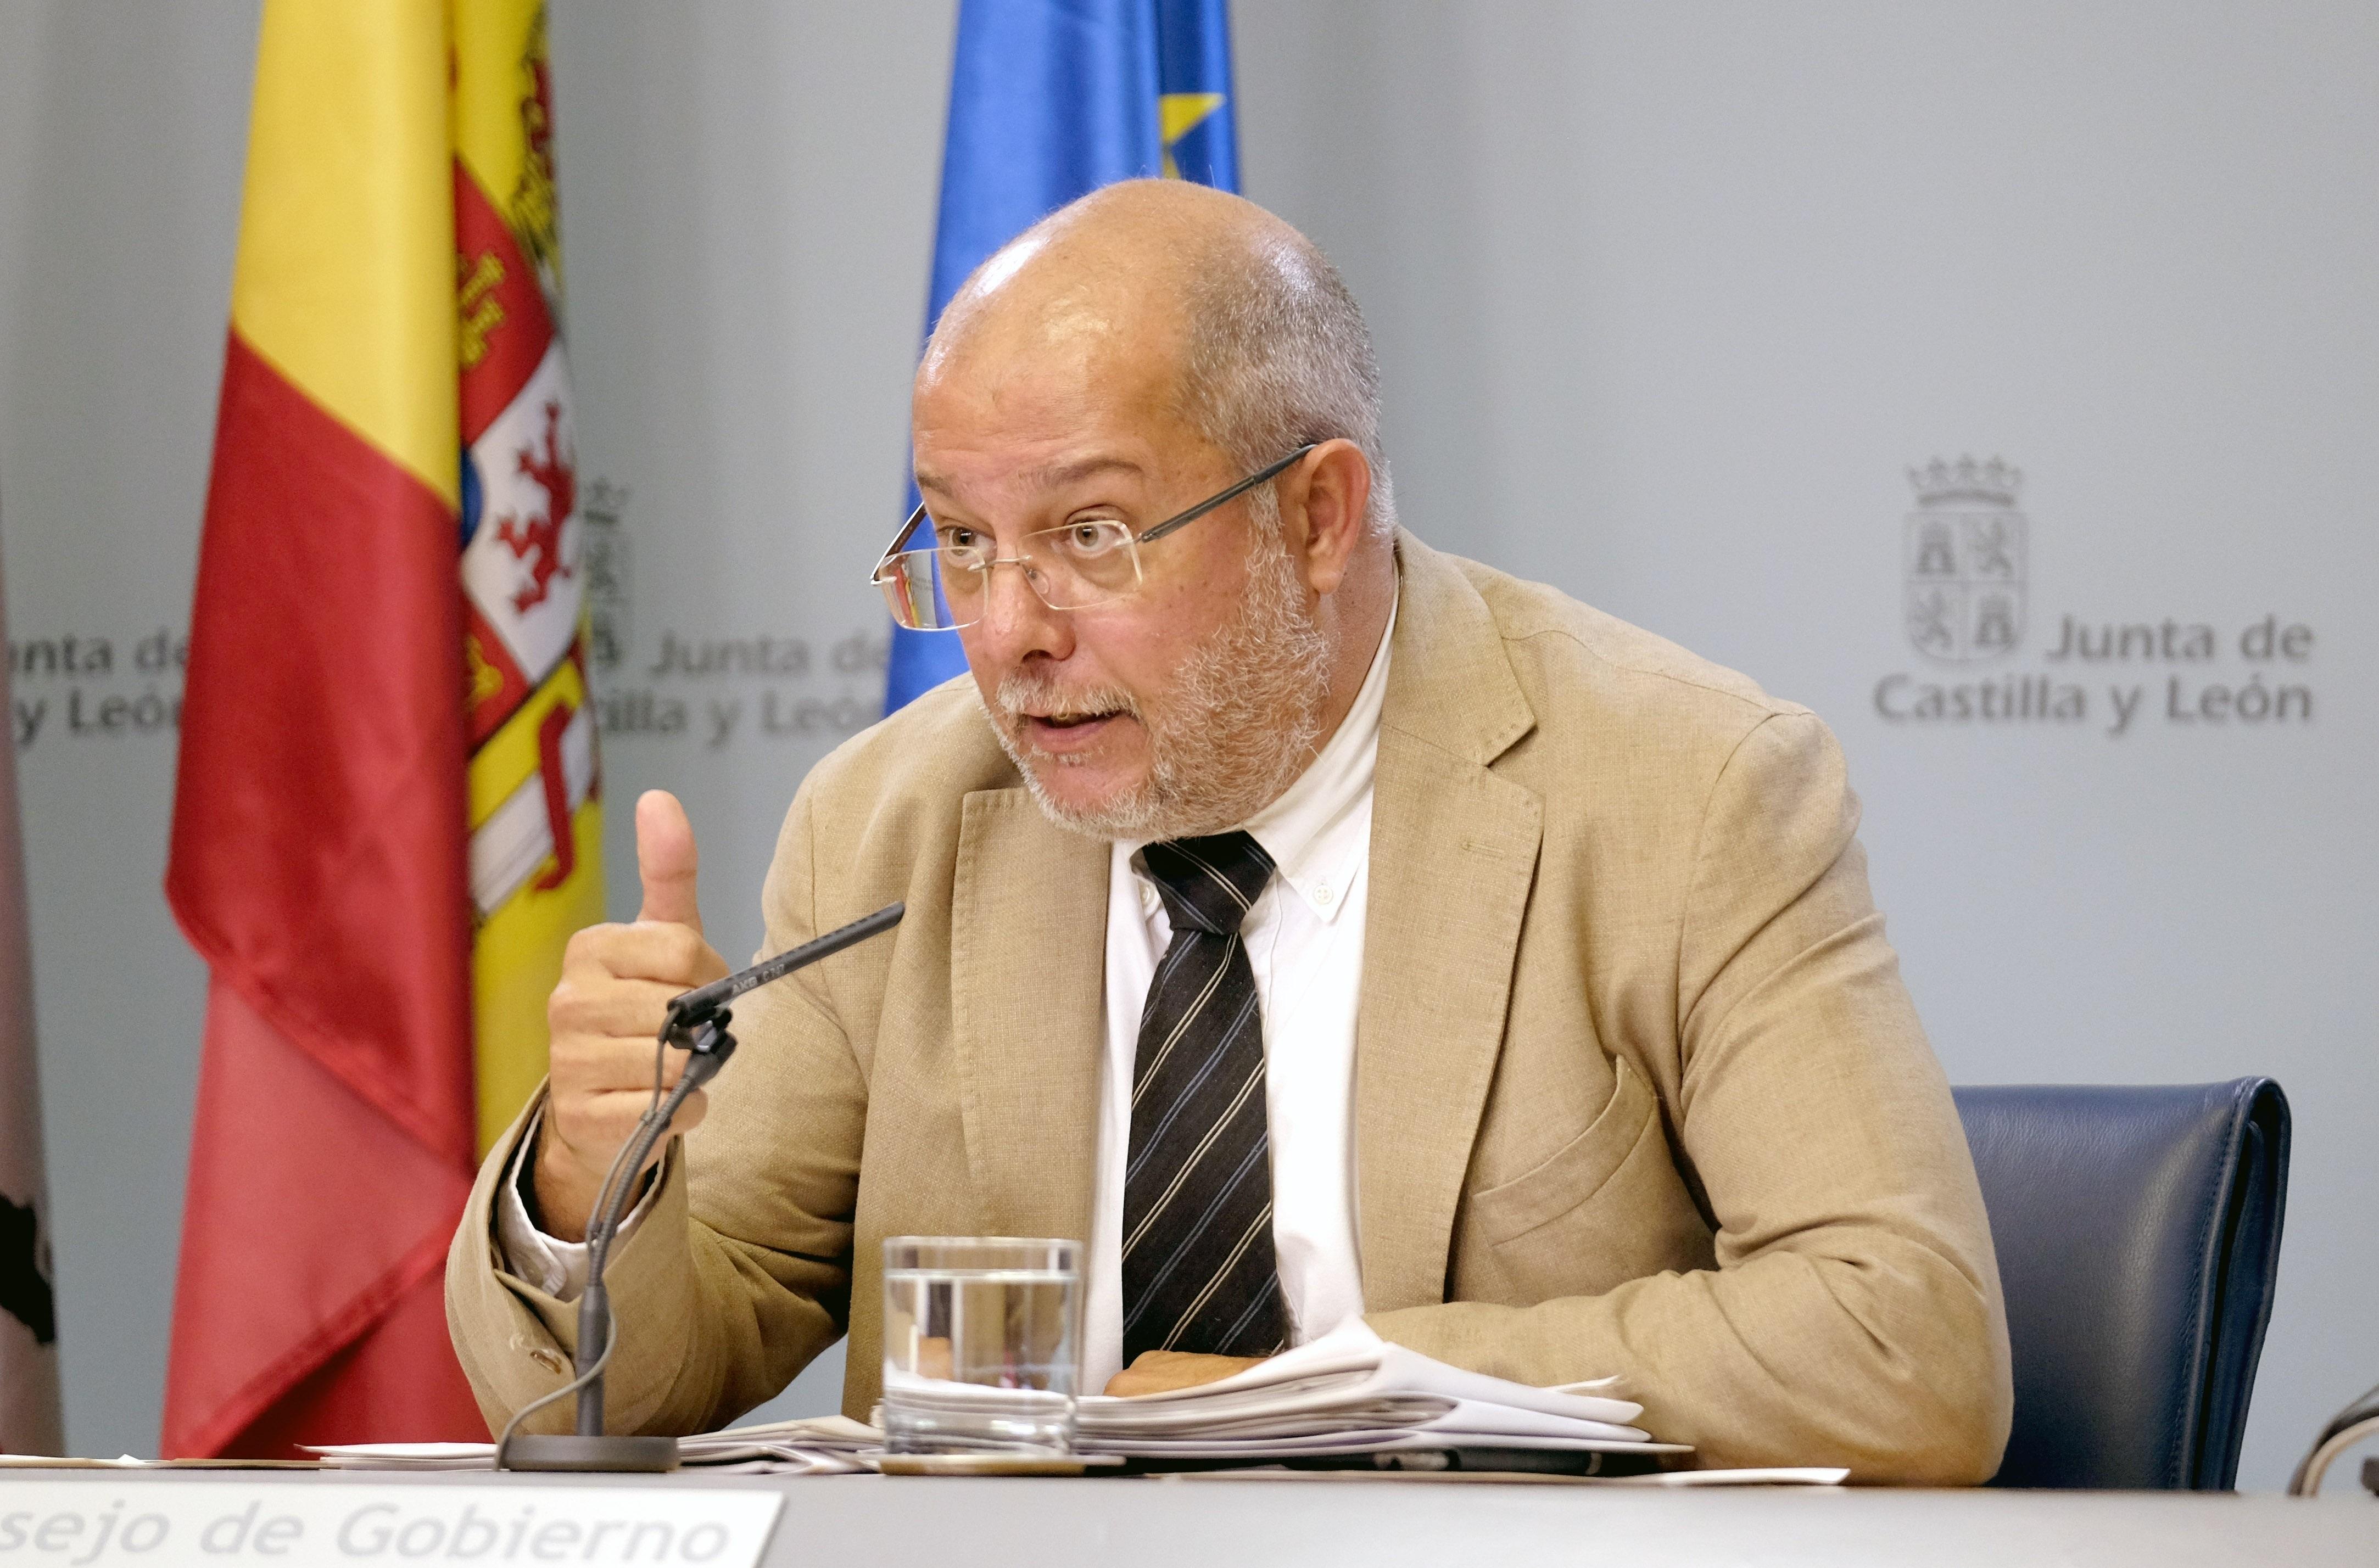 El portavoz y vicepresidente de la Junta de Castilla y León Francisco Igea en la rueda de prensa tras el Consejo de Gobierno. Europa Press